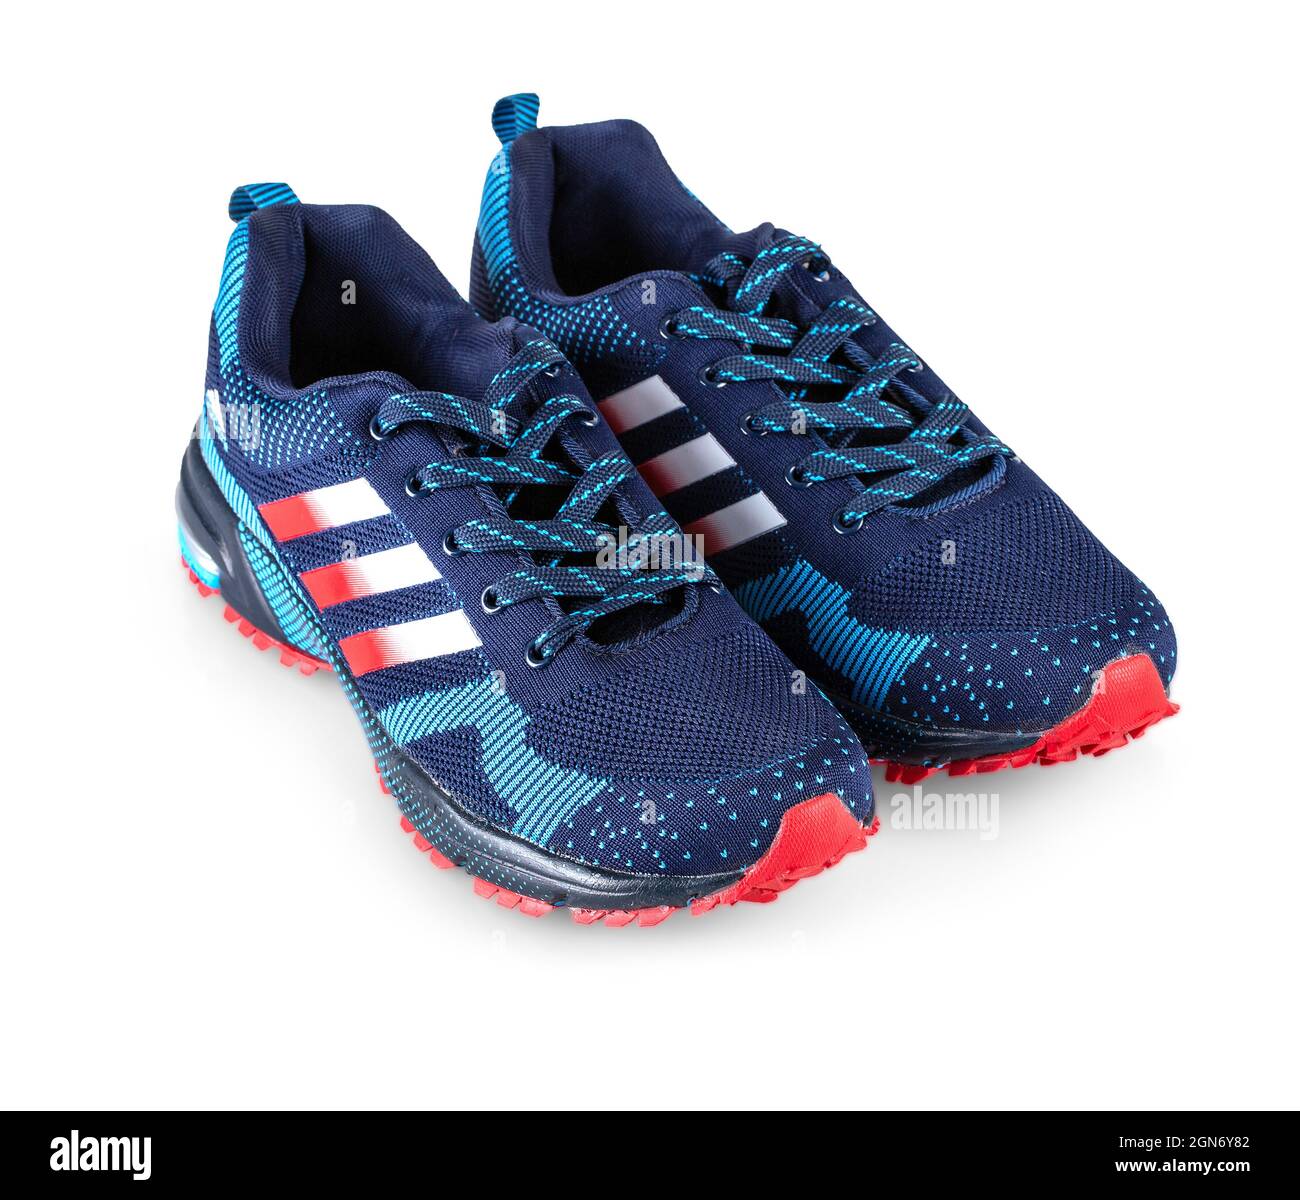 Blaue Adidas Laufschuhe. Adidas, Unternehmen in Deutschland. Isoliert auf  Weiß Stockfotografie - Alamy